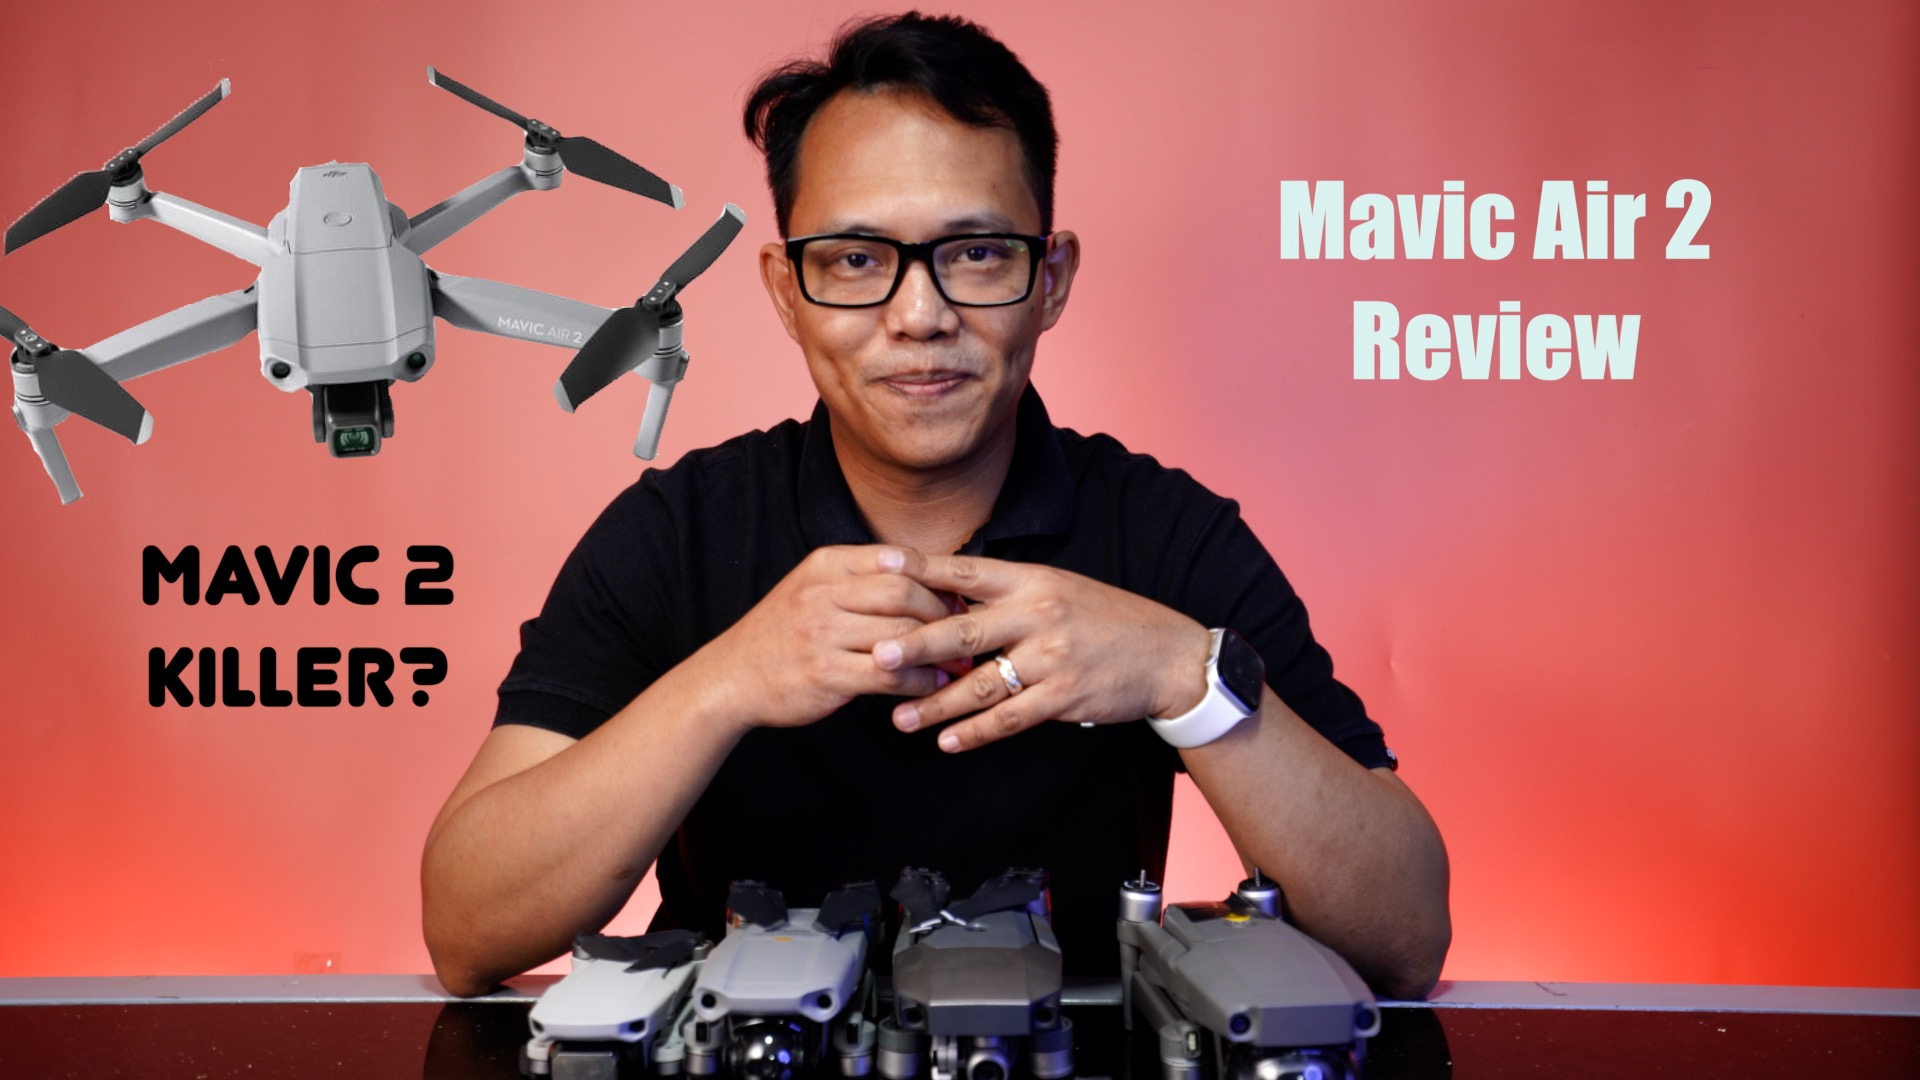 Mavic Air 2 Review